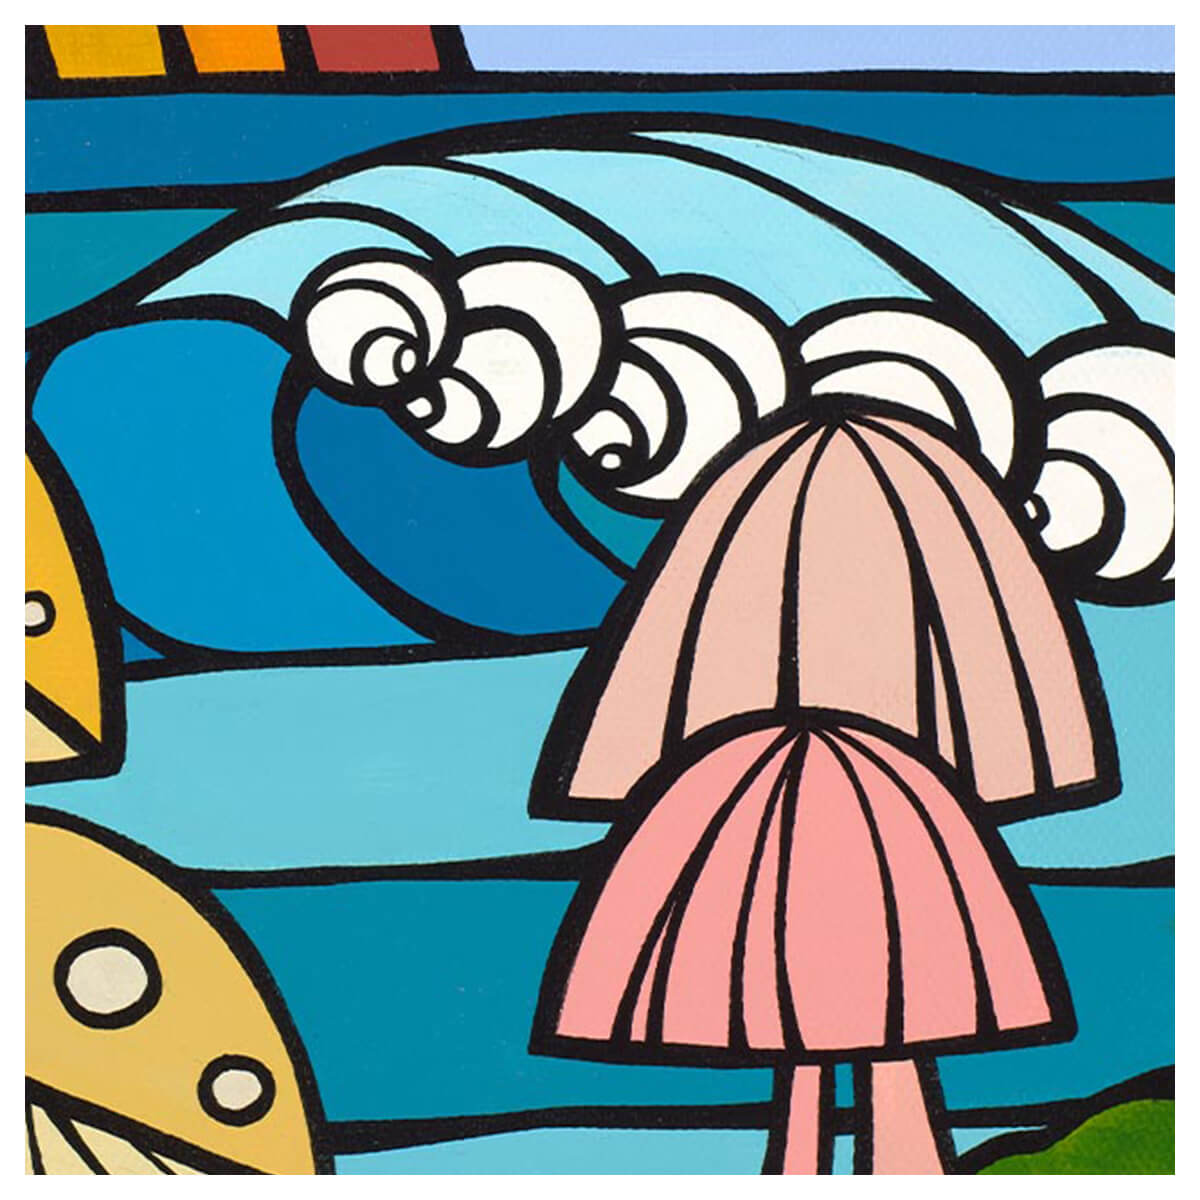 Tropical mushroom art by Hawaii artist Heather Brown - Pink shroom detail 